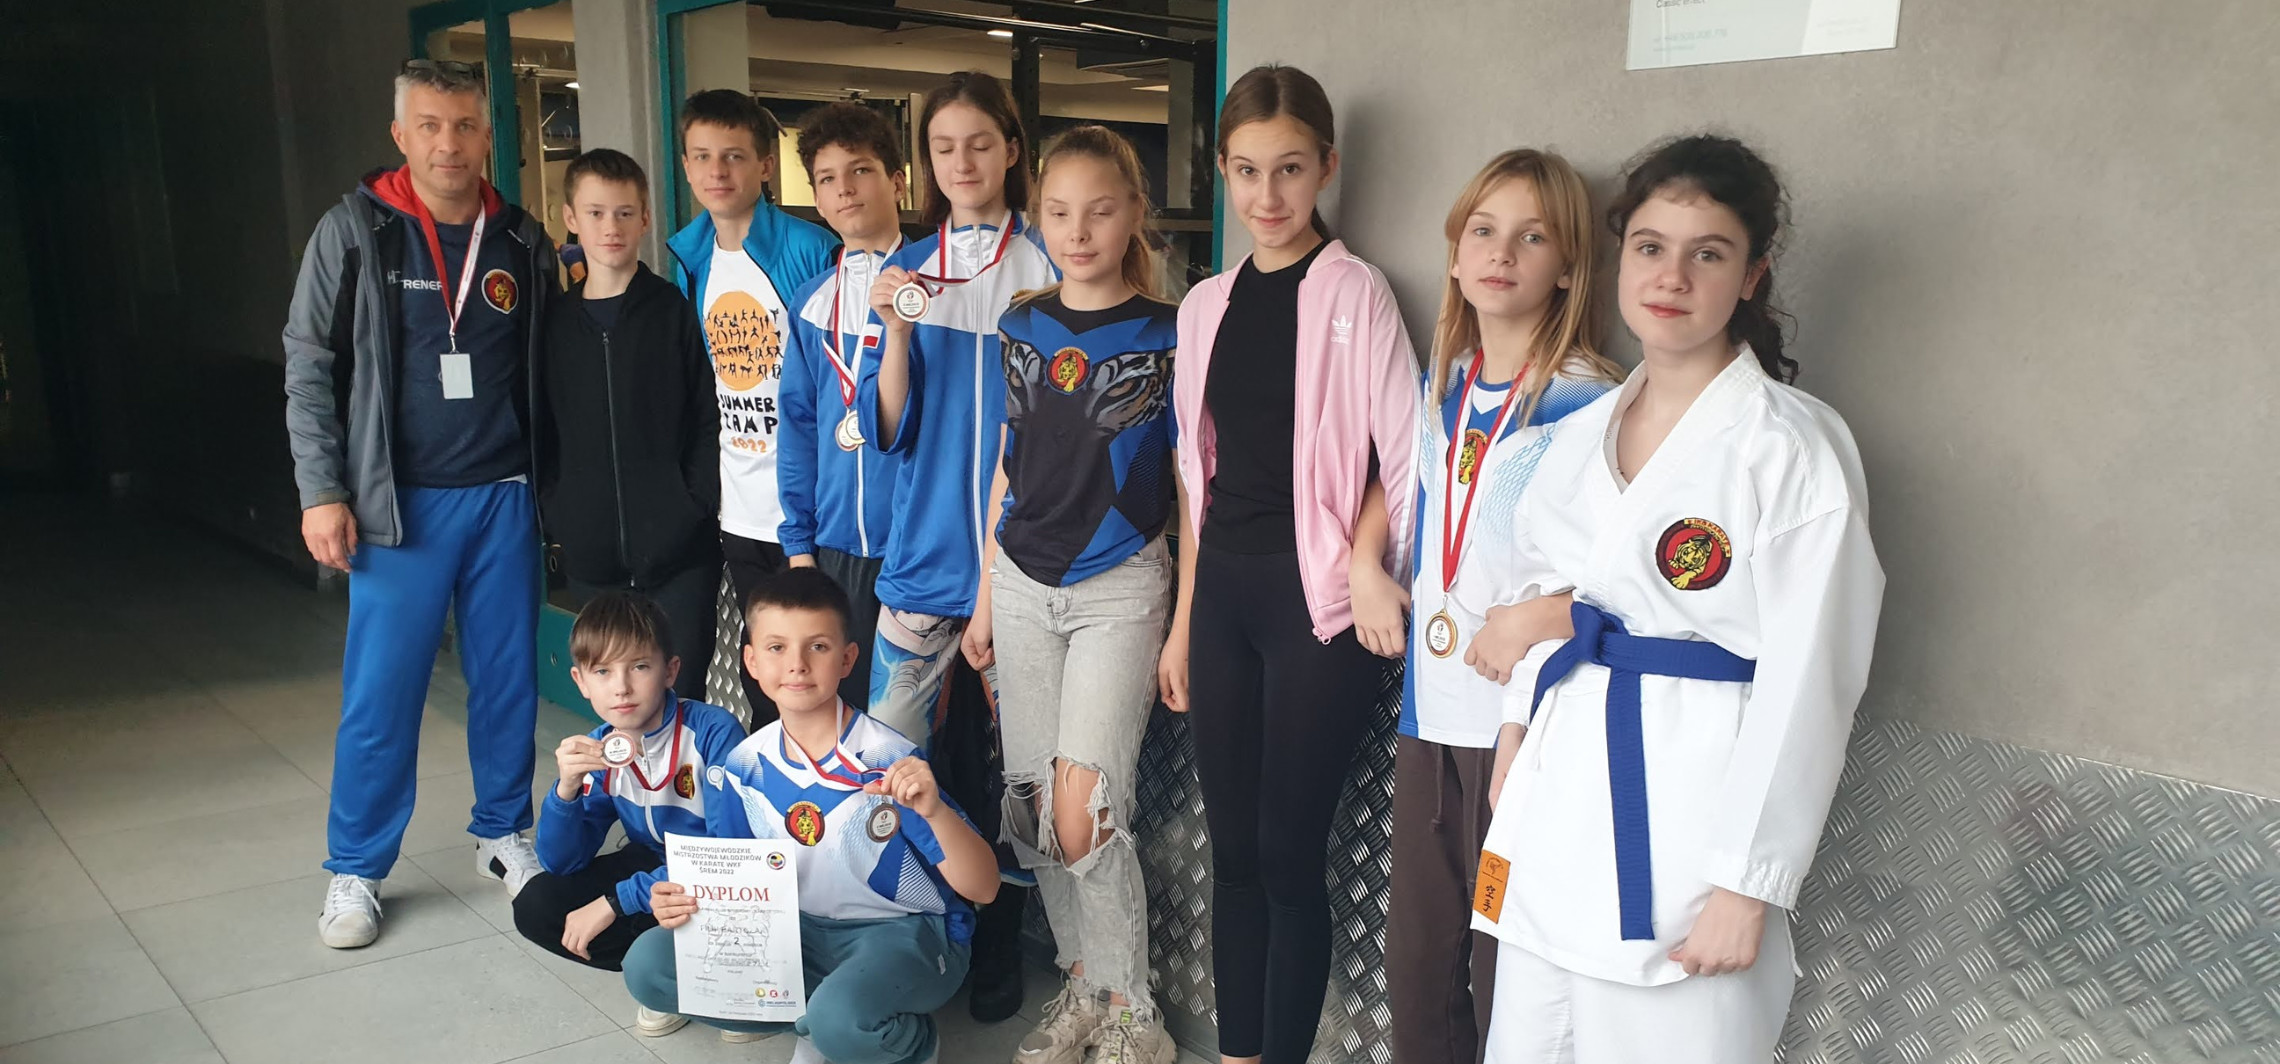 Inowrocław - Młodzi karatecy z Inowrocławia na medal